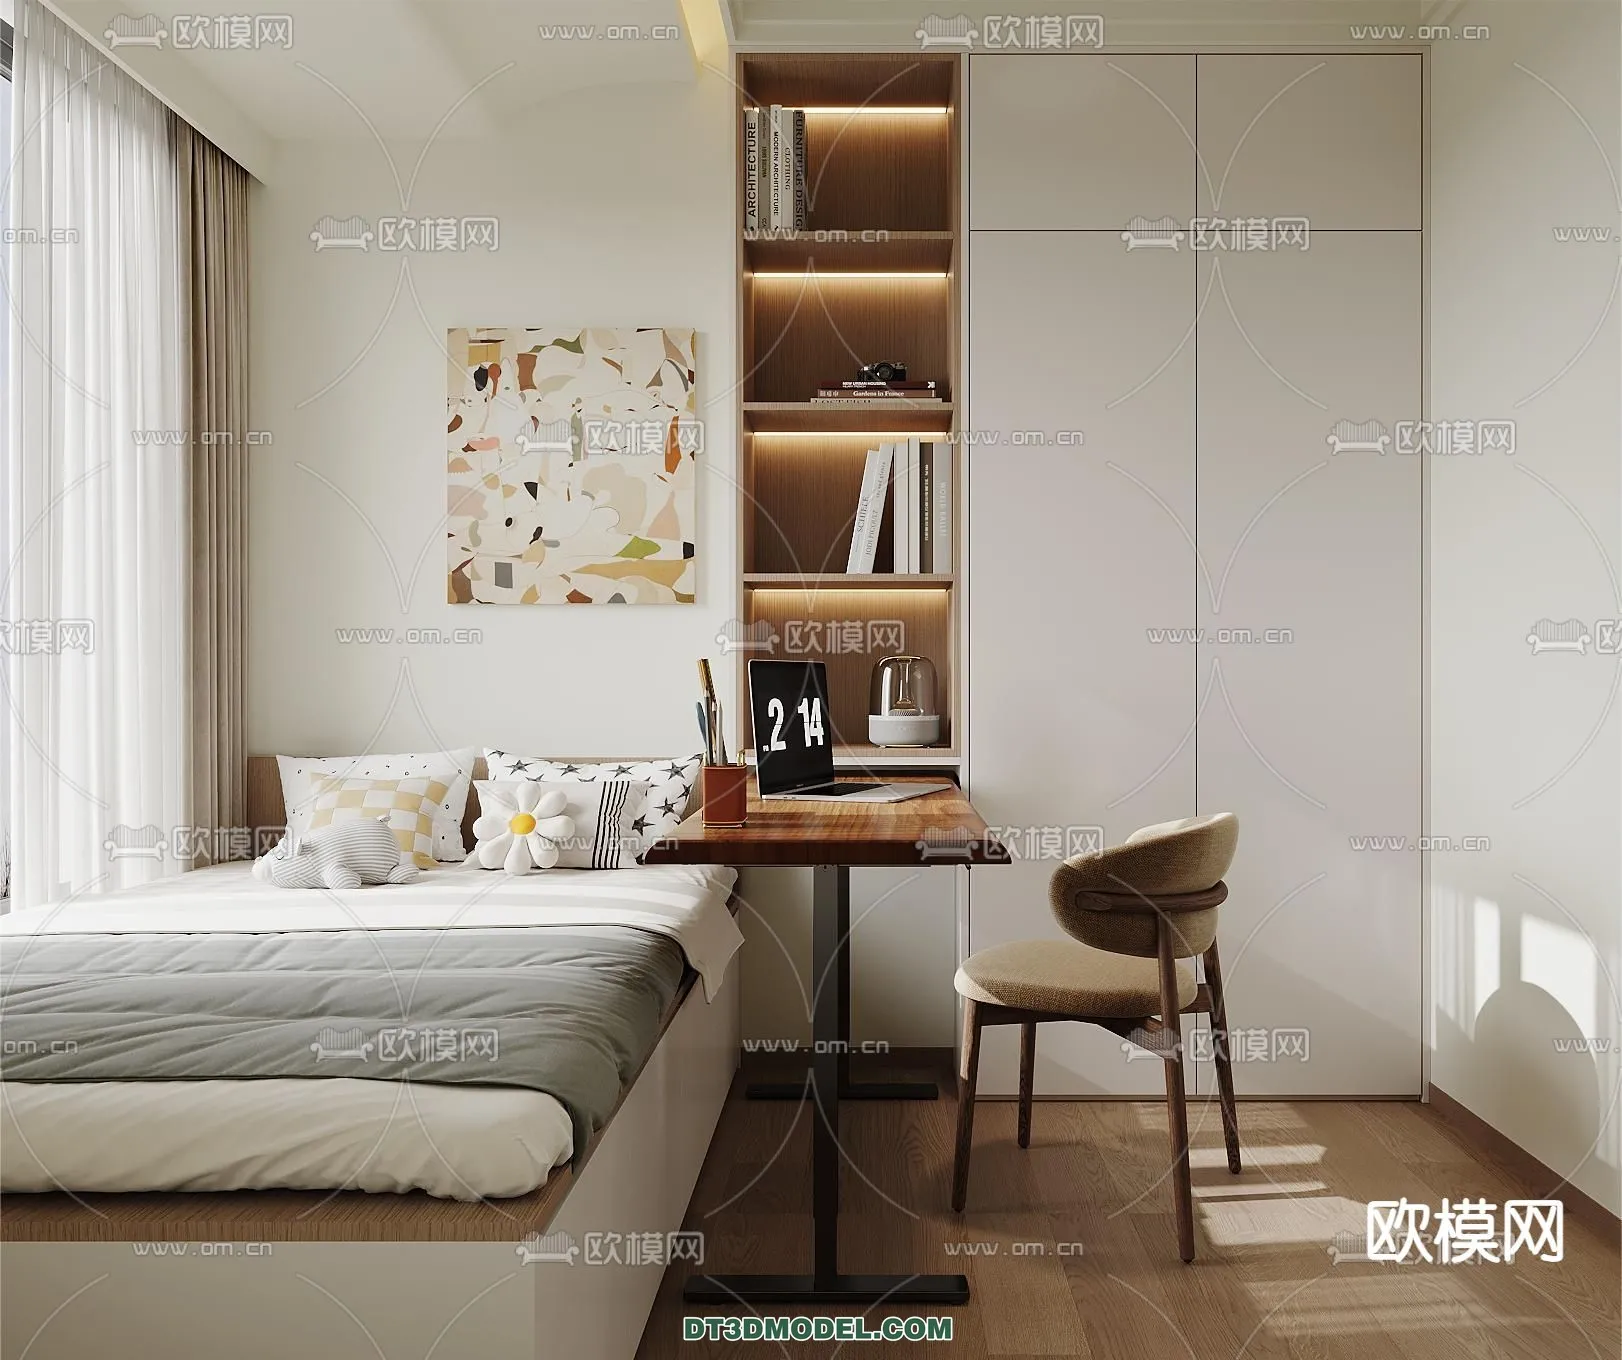 Tatami Bedroom – Japan Bedroom – 3D Scene – 077